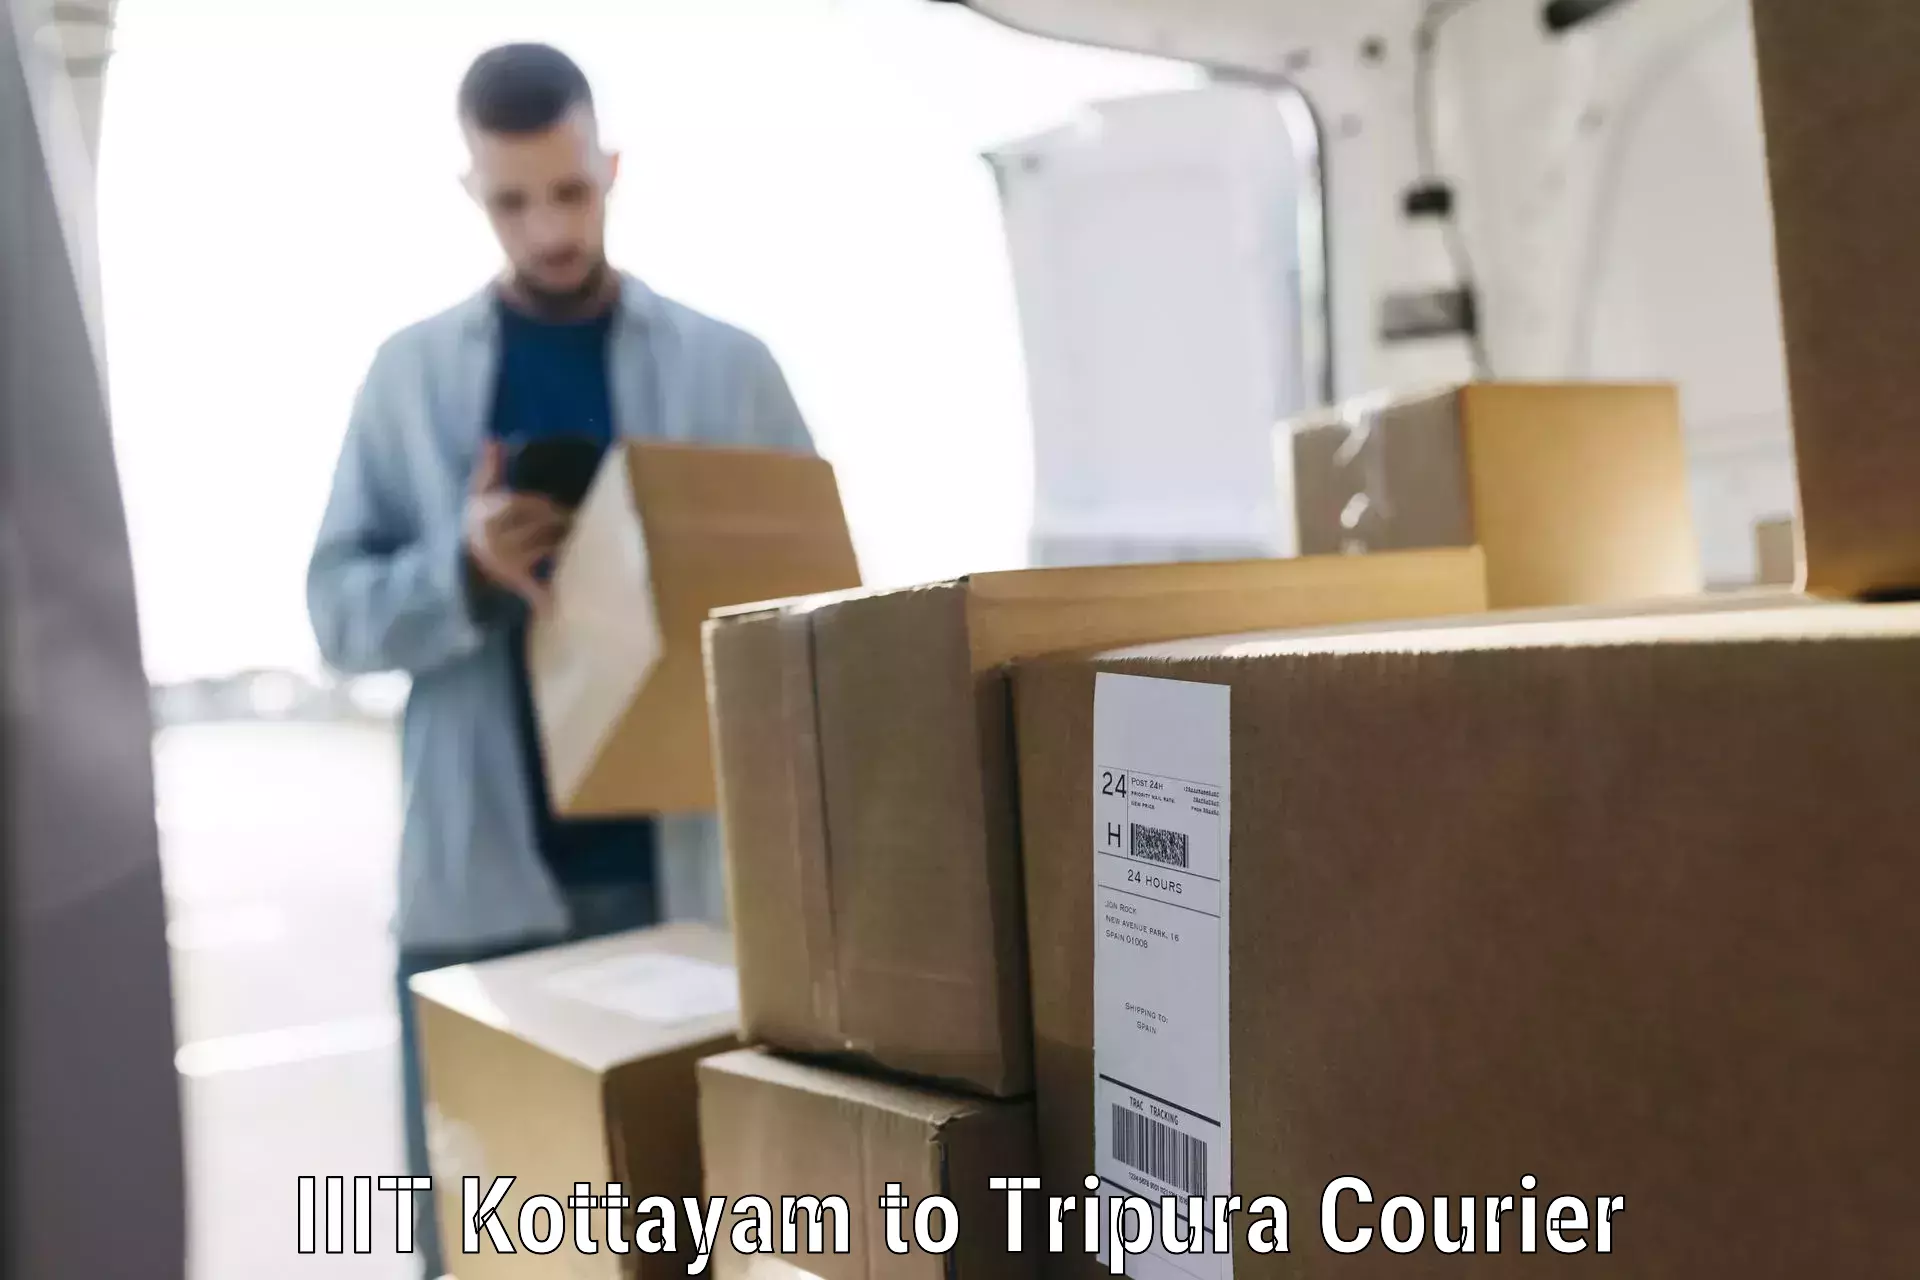 Luggage delivery app IIIT Kottayam to Tripura